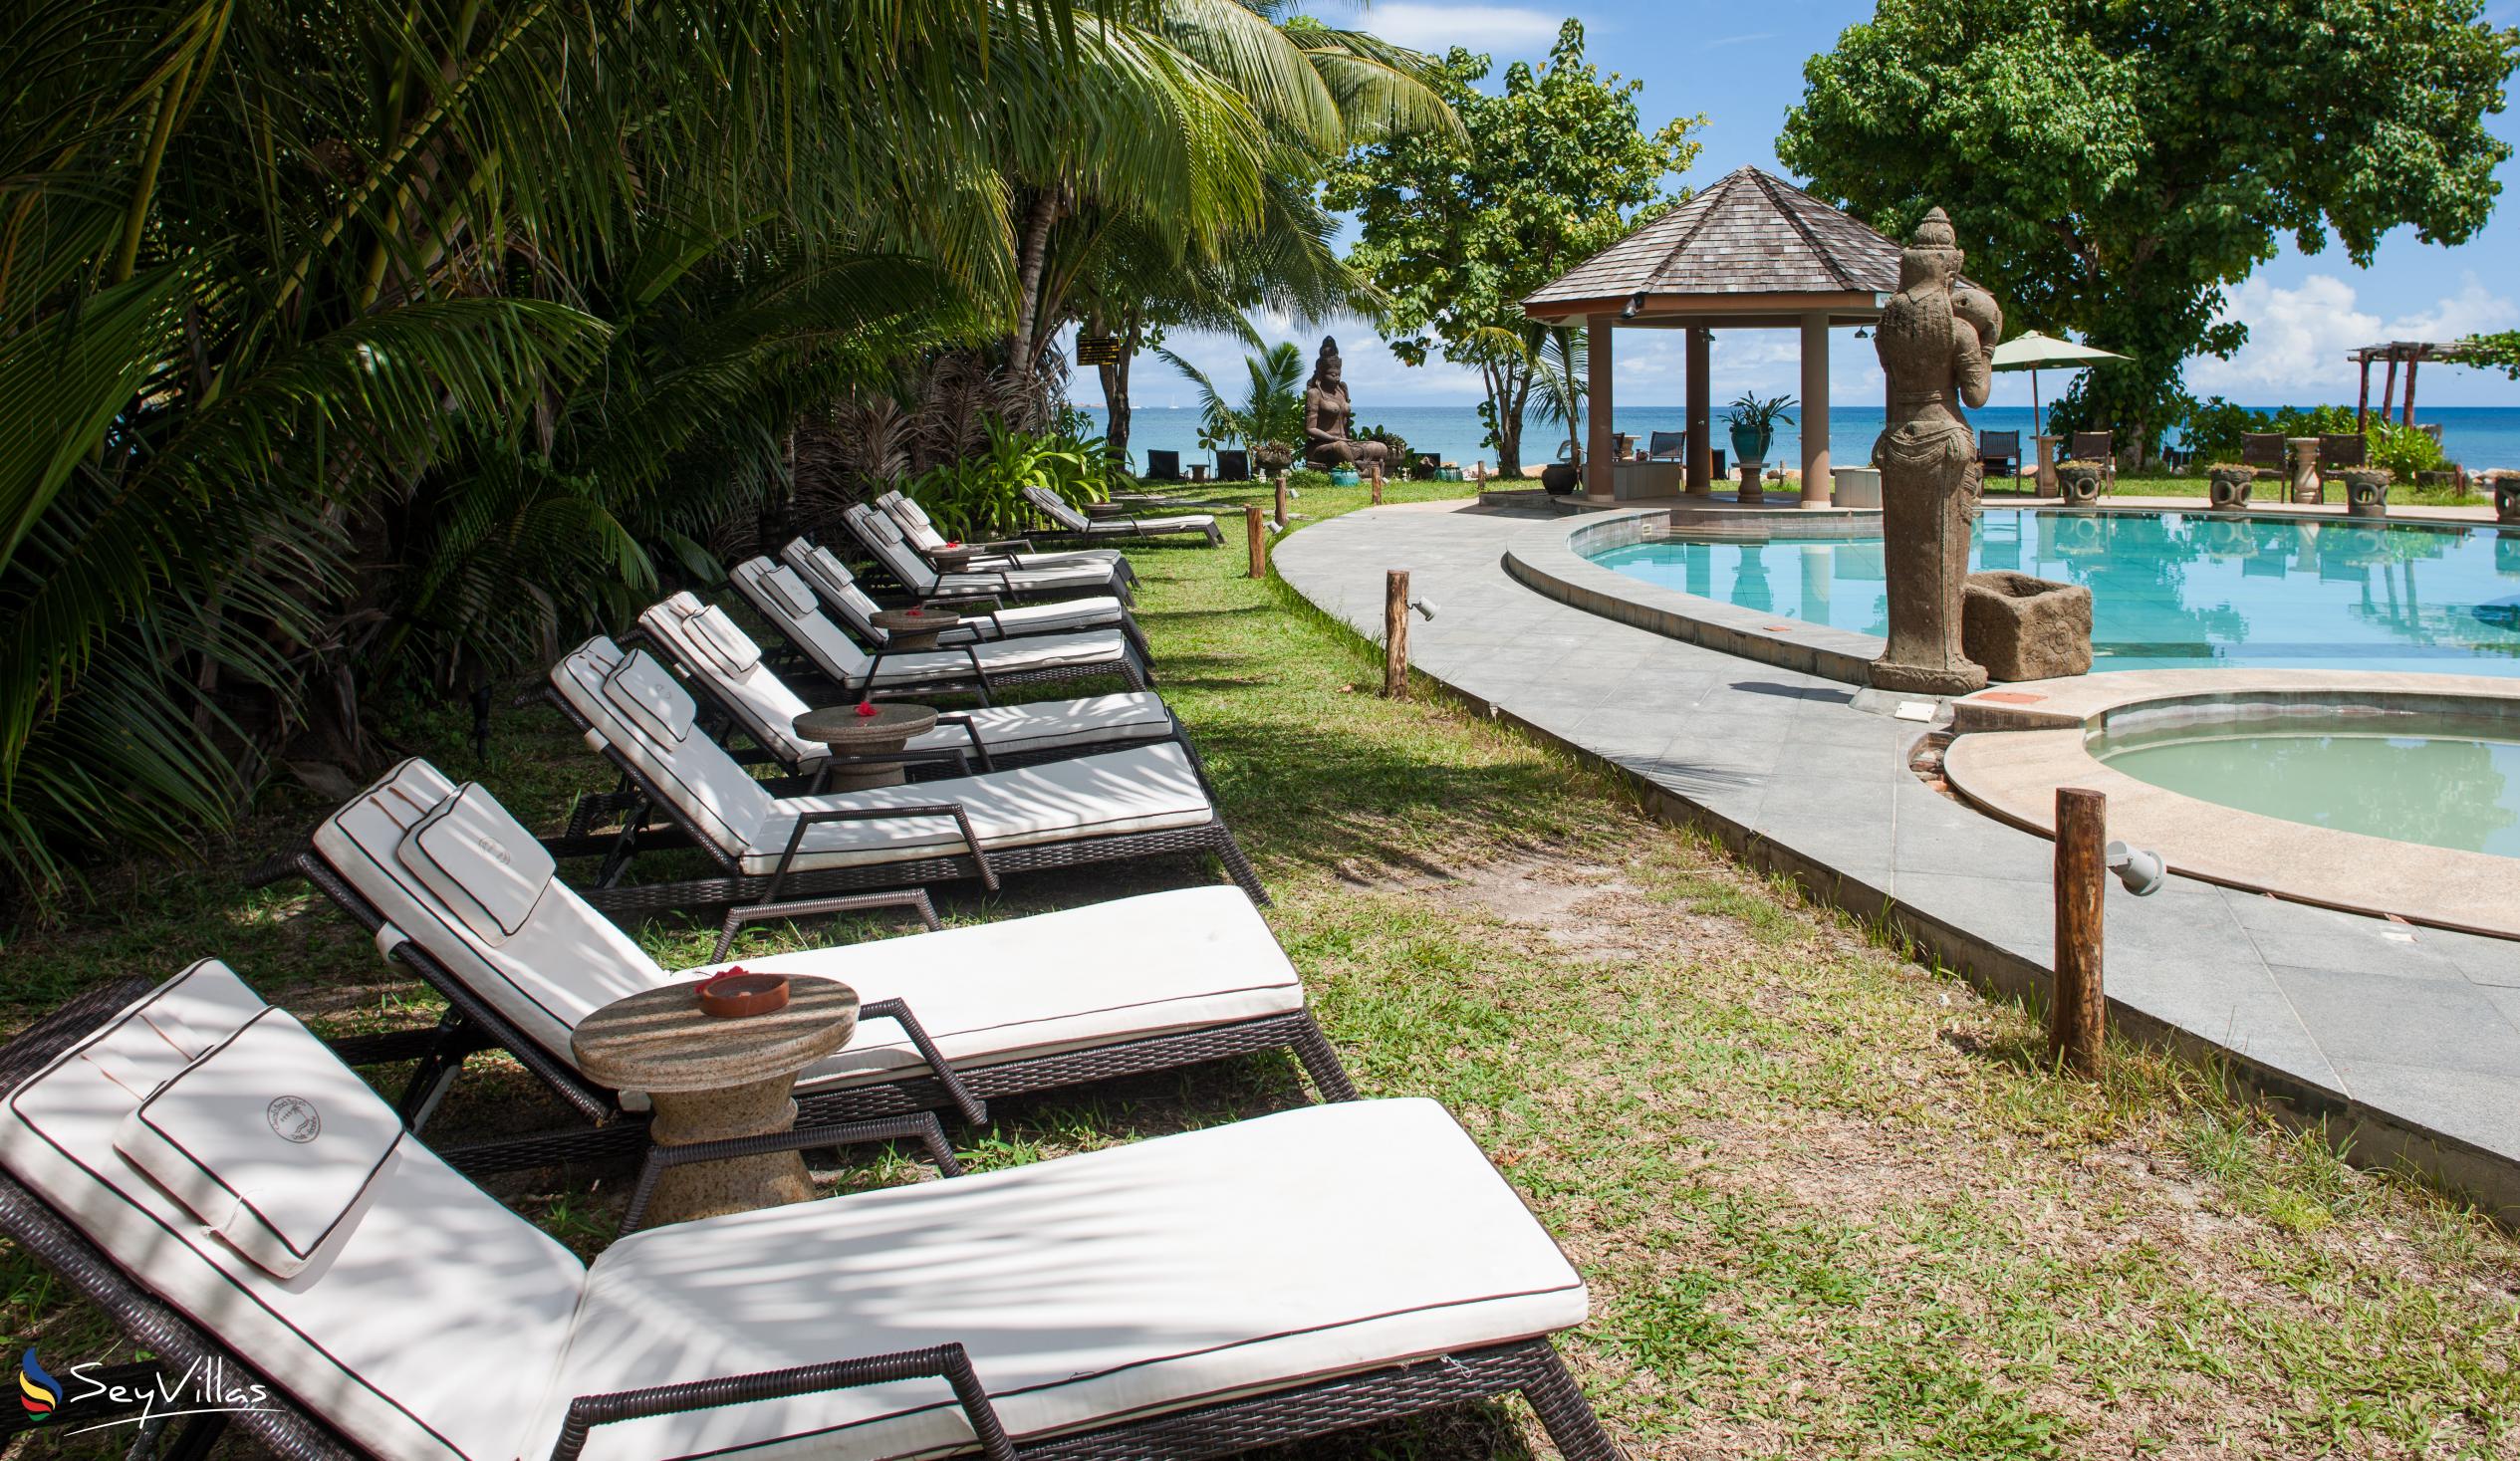 Foto 8: Castello Beach Hotel - Aussenbereich - Praslin (Seychellen)